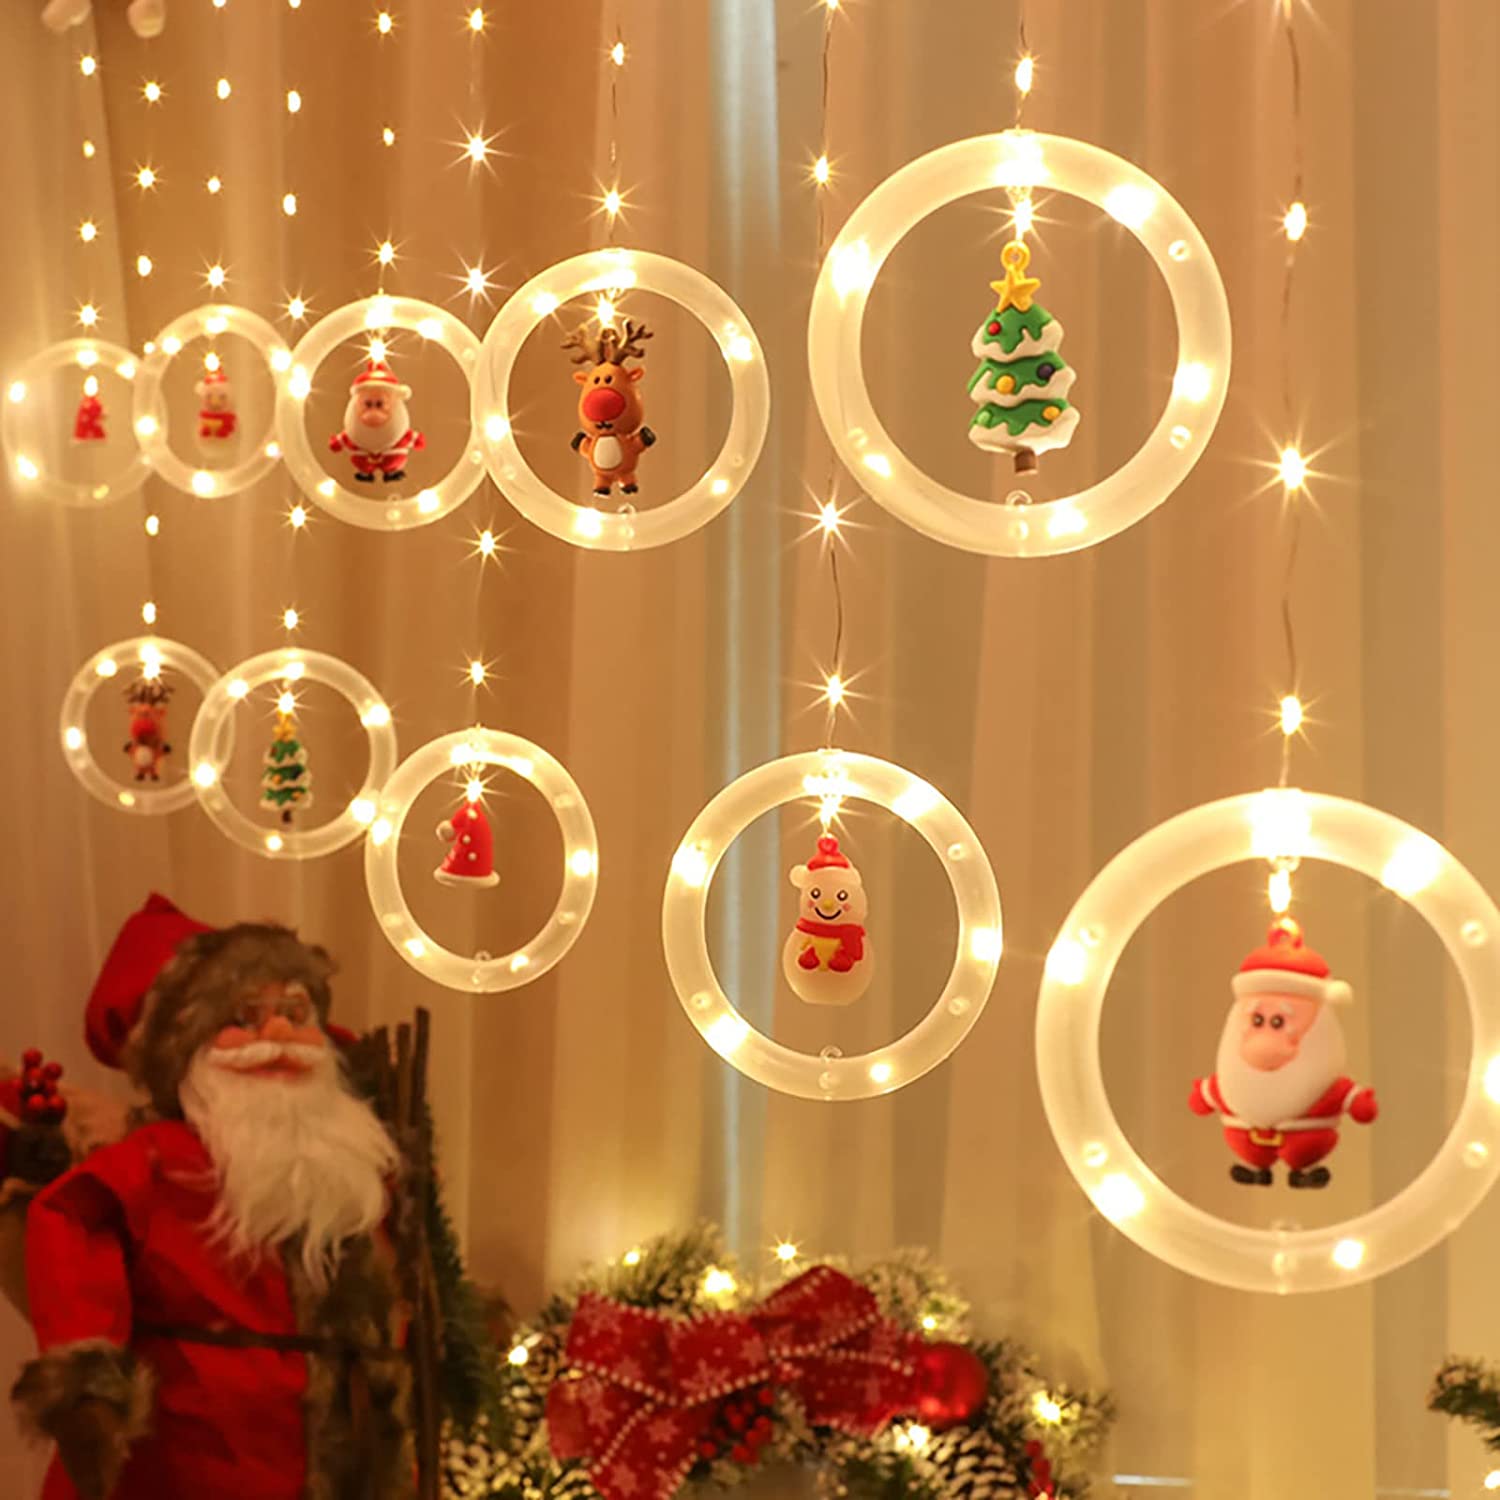 【クリスマス雰囲気溢れる】可愛くて、クリスマス雰囲気が溢れます。暖かい白色LEDリングは素晴らしい照明効果と暖かい雰囲気を作り出し、ロマンチックな雰囲気を加えます。常亮LEDしながら点滅LED付き点灯モードで、夜景でウォームホワイトなライトカラーは柔らかくて美しい、キラキラなライトを飾ると、夢幻的な雰囲気もアップしています。 【USB充電式&amp;省エネルギー】USBインターフェースは頻繁な交換やバッテリー購入の煩わしさを排除し、非常に安全な5Vの低電圧で動作します。コンピューター、USBアダプター、モバイル電源など、USBインターフェースを備えたあらゆる機器に接続できます。光線は健康で、紫外線や赤外線を含まないので、汚染なしで目を保護します。暖かくてロマンチックで環境に優しい省エネ製品です 【高品質&amp;取付簡単】スターライトは低圧だけでなく、防水もあります。安心して使えます。主線にホックがついていますので、壁に引っ掛けることの出来るフックを用意して吊り下げるだけです。当電飾の設置には時間を要しません。防水ですが、雨や雪の日にも利用できます。長い使用寿命を保つために、水の中にそれを使用しないでください。 【適用場合】天井から吊るしてもよし、壁に貼ってもよし、床に並べてもいいです！色合いのセンスがよくて、普段お部屋や店などの飾りに活用します。誕生日、パーティー、婚礼式、クリスマスもしくはその記念日、祝日、イベントなどの飾り付けに適用します。 【素材】：長さは3mのメートルであり、10個0.5m電球リボン、直径10 cmリングを持っています。頑丈な銅線を採用して、銅線の部分は曲がったり折ったりしても変形と崩壊はしません。10個ミニサンタ電球並べても可愛い、クリスマスのデコレーションとして手軽に飾ったり、置いたりできます。USBケーブルを使って充電します（データ線は含まれていません）